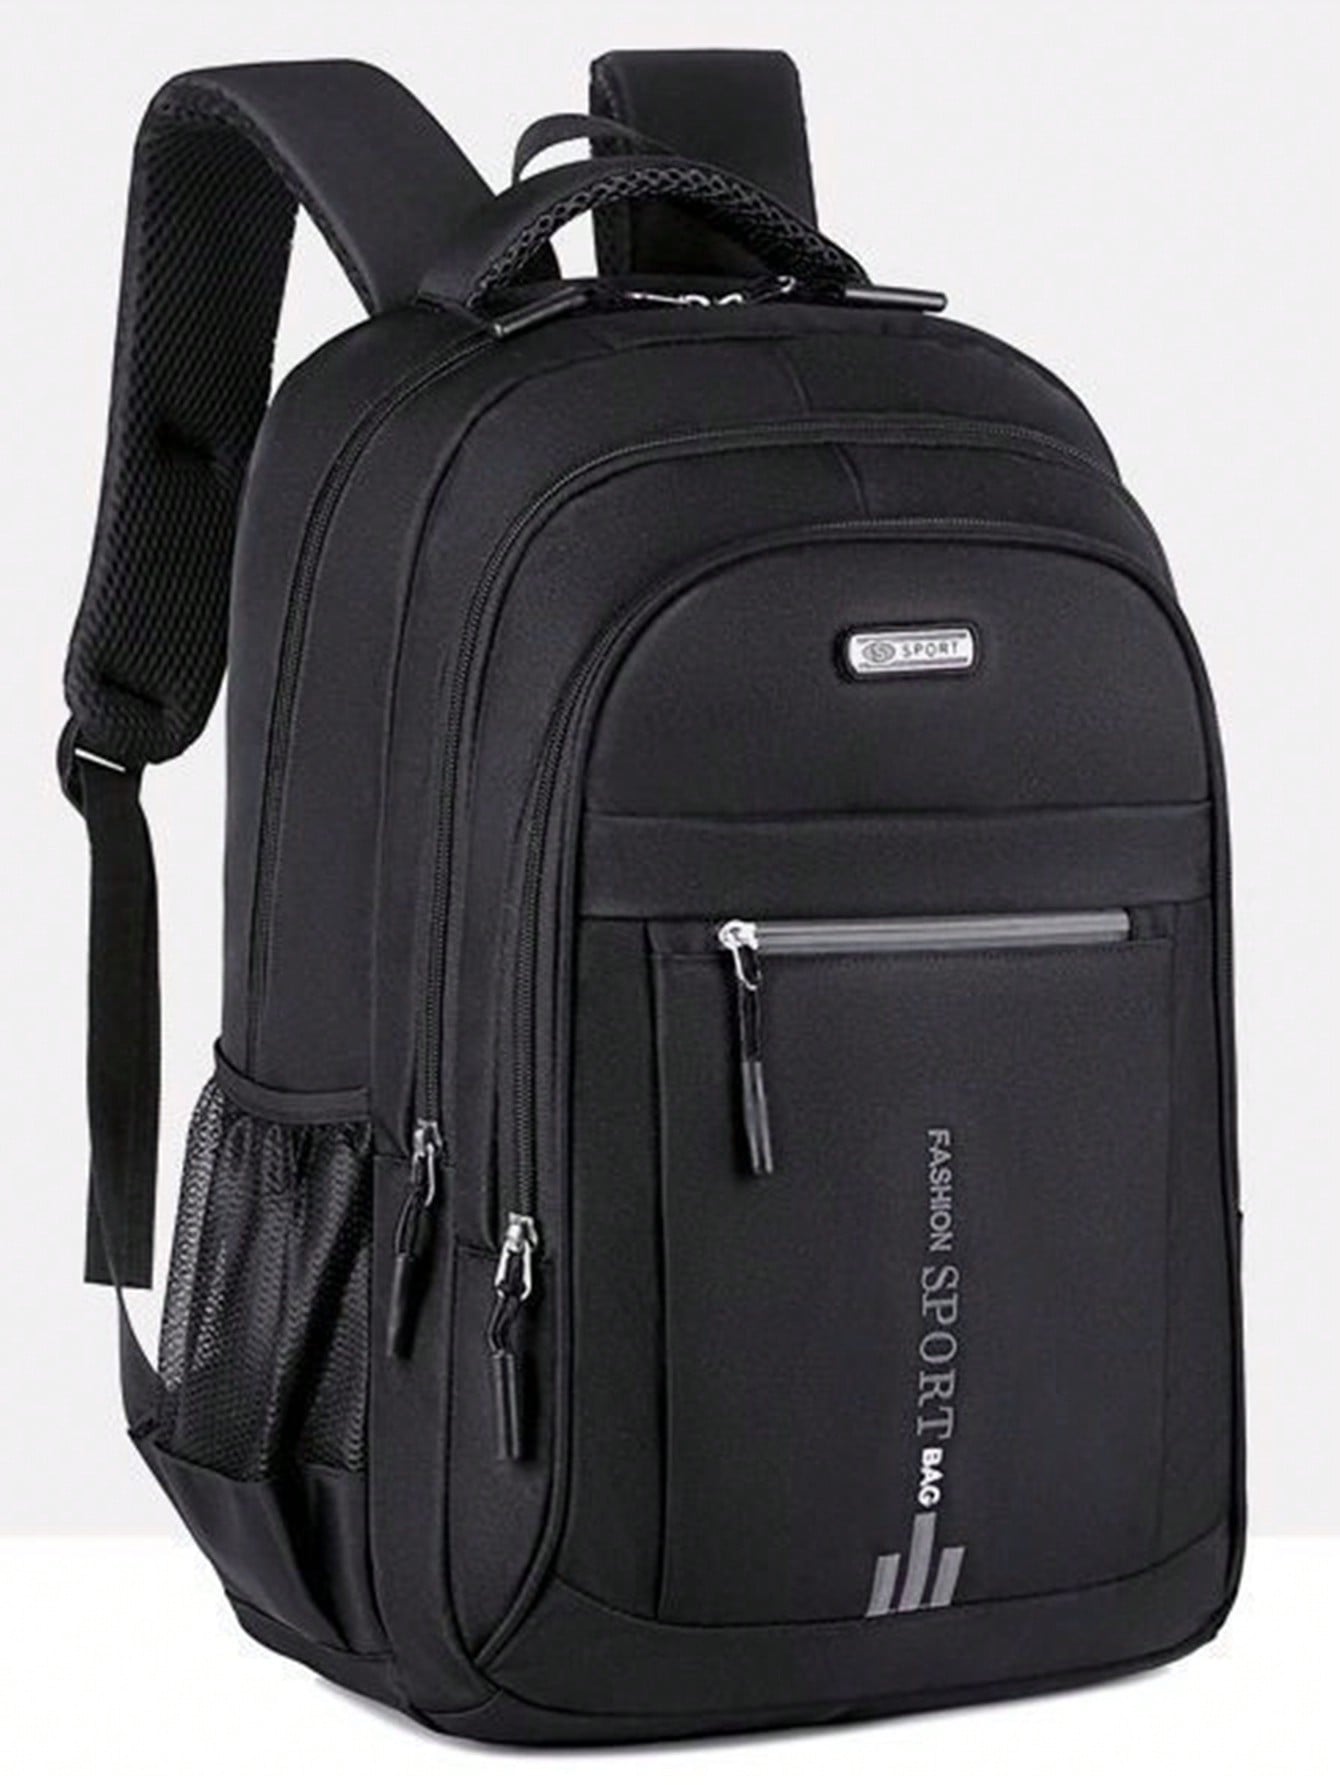 Рюкзак для выездного рабочего багажа, черный мужской минималистичный рюкзак большой вместимости серый